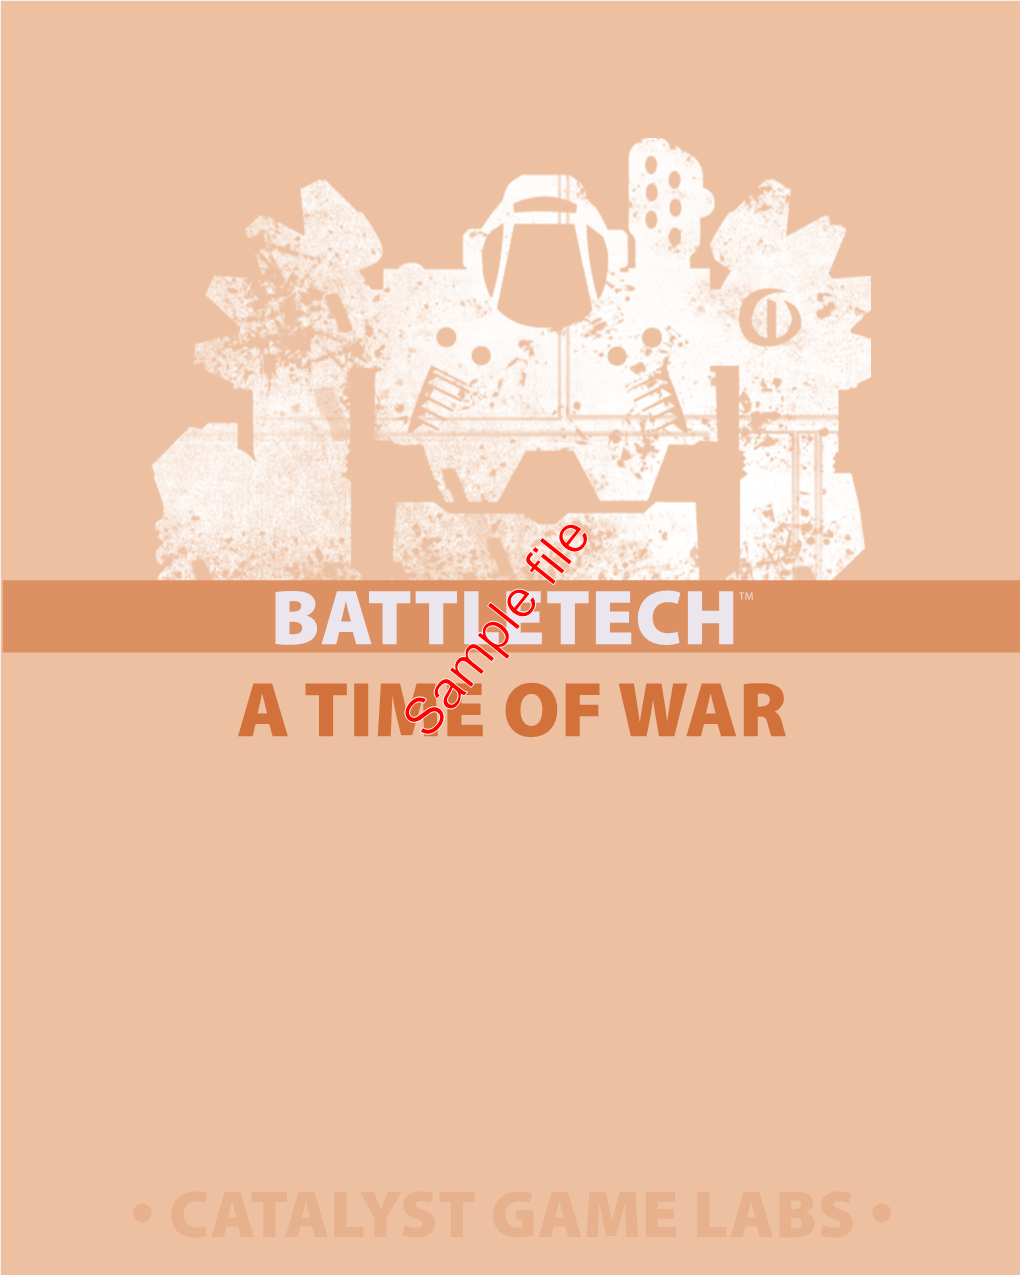 Battletechtm